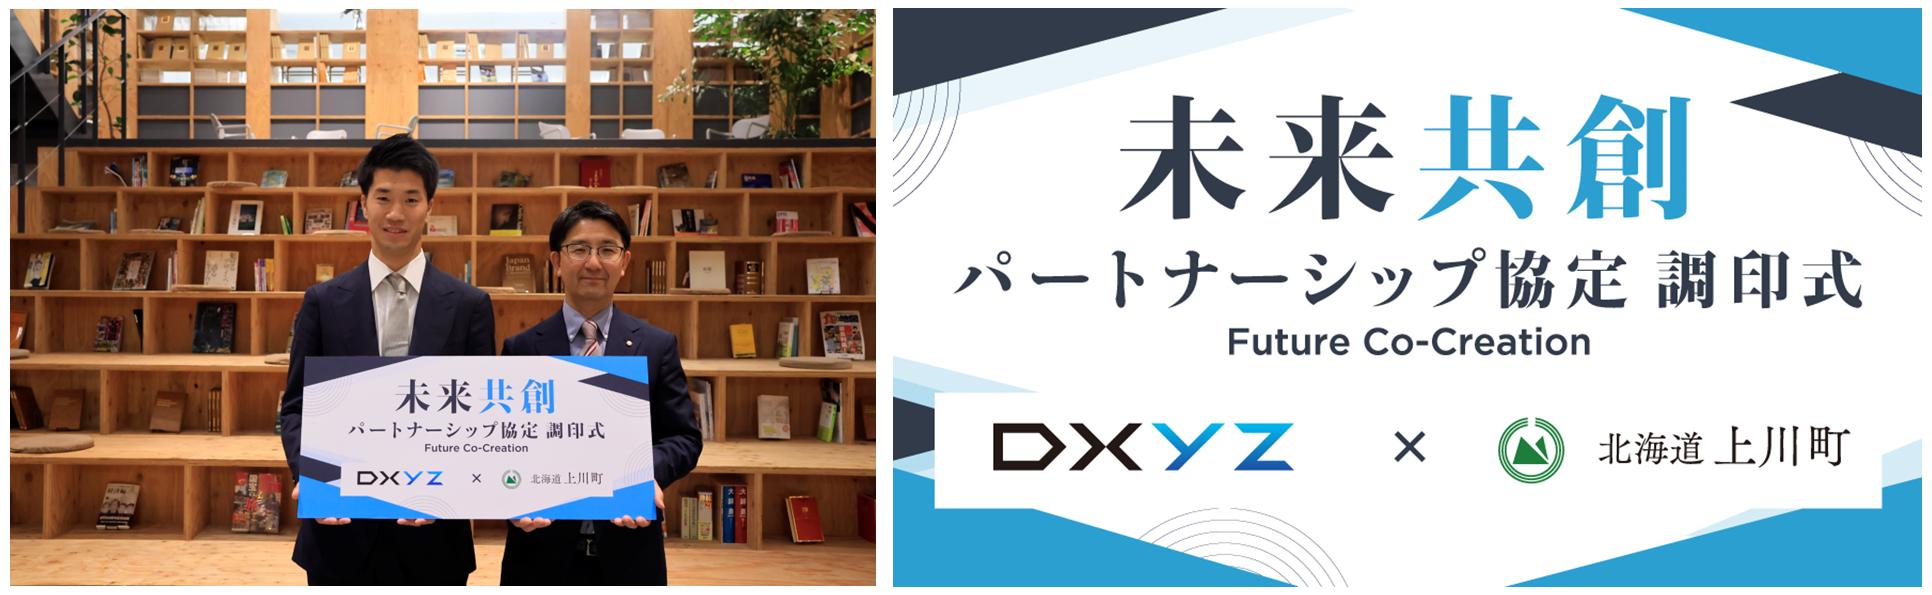 ミガロHDのグループ会社DXYZが北海道上川町と“未来共創パートナーシップ協定”を締結し社会課題解決へ